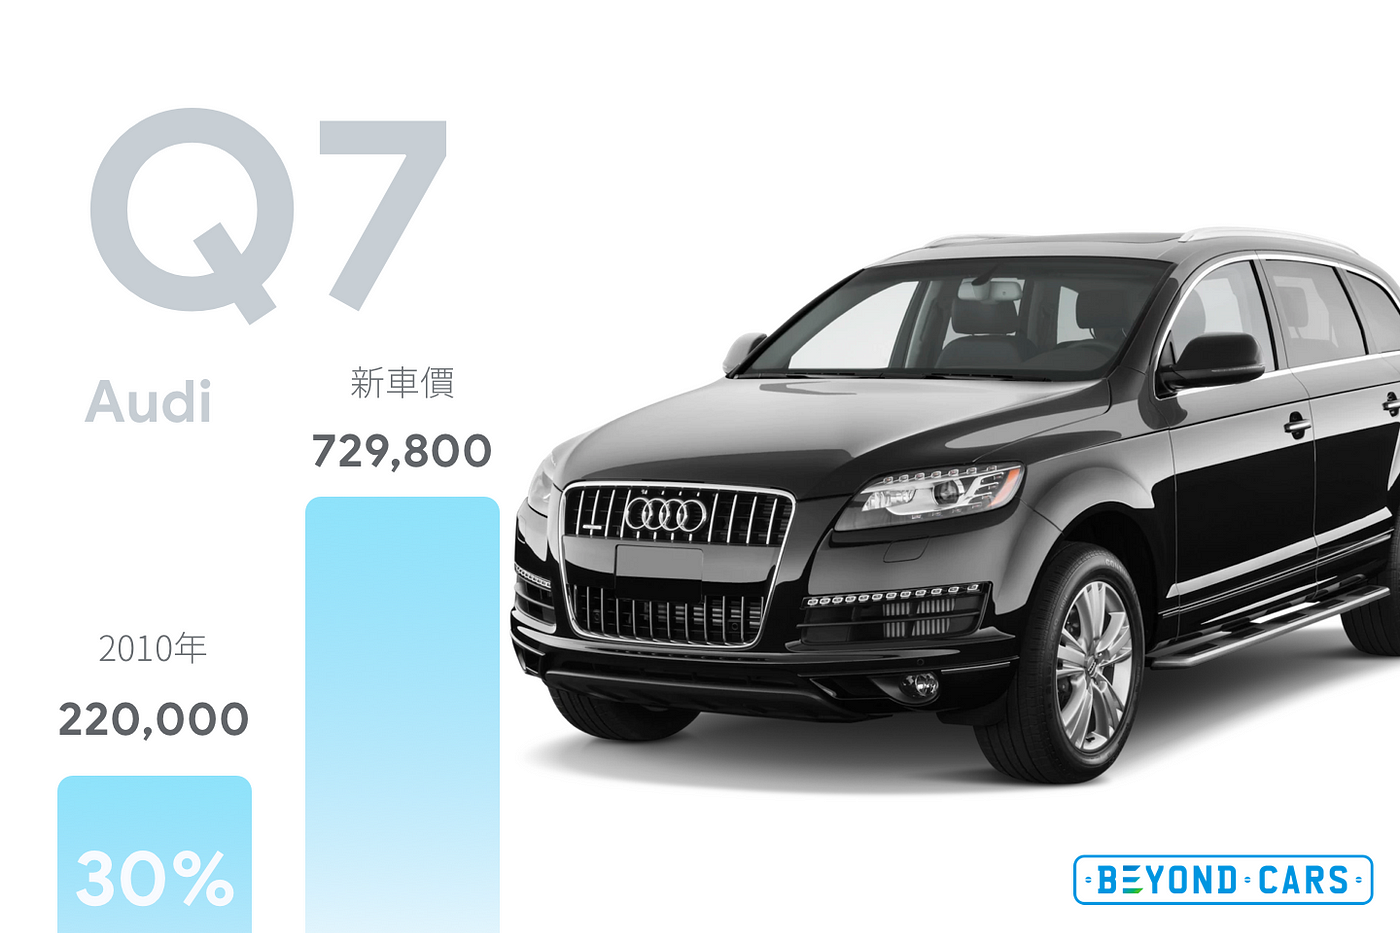 18年買車攻略 分析28car上最保值的車款 香港人在過去年的買車習慣都有挺大改變 而28car這個平台亦成為了很多二手車 By Garry Yu Beyond Cars Medium